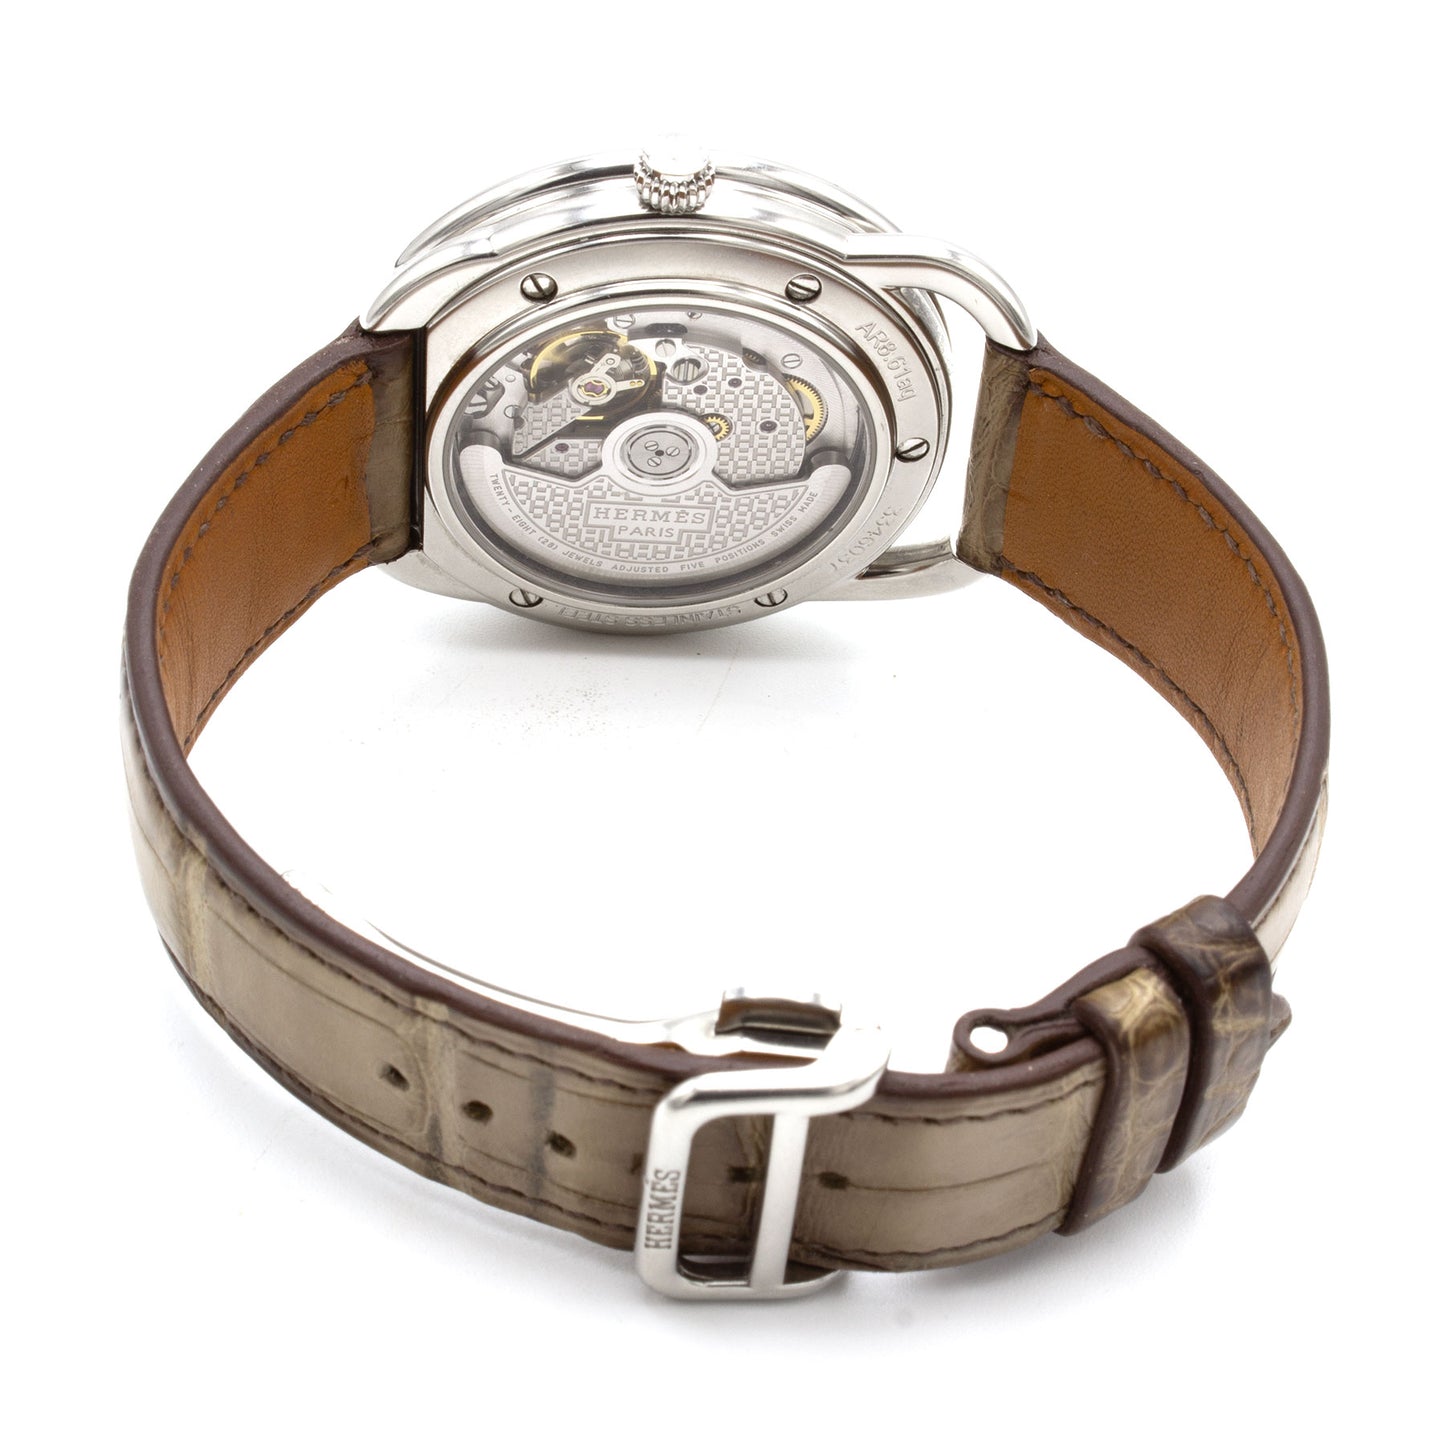 Hermès Arceau AR8.61AQ watch